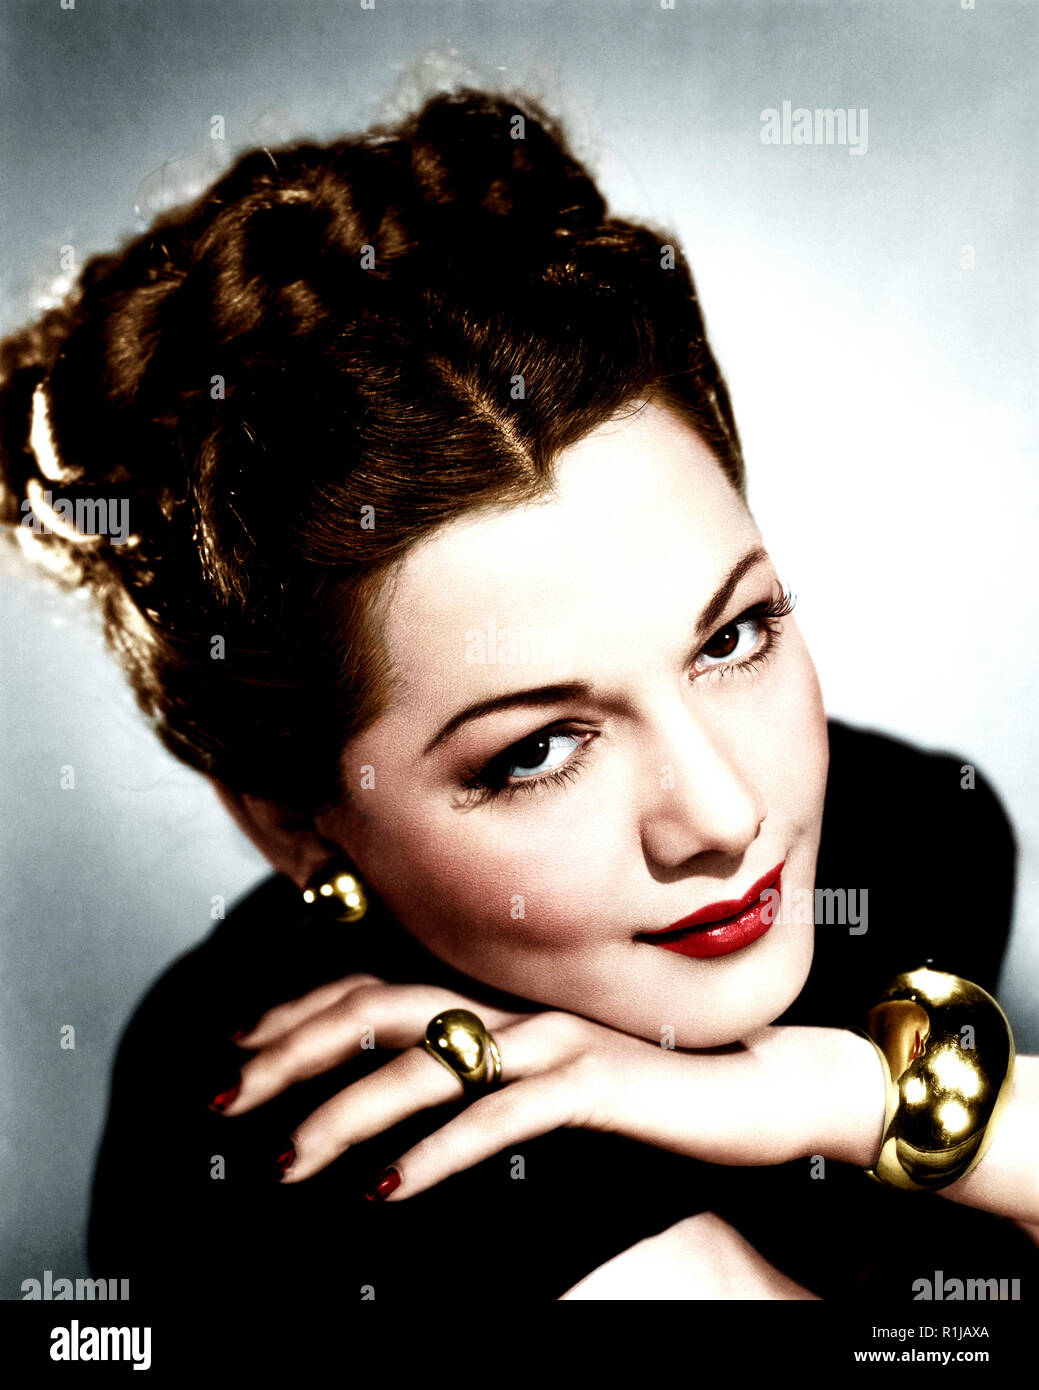 MarÌa¡frica Gracia Vidal (6. Juni 1912 - 7. September 1951), bekannt als die Königin von Technicolor, war eine Dominikanische motion picture Schauspielerin, die Ruhm und Popularität in den 1940er Jahren gewann als exotische Schönheit in den Hauptrollen in einer Reihe von Filmen in Technicolor kostüm Abenteuer Filme. Ihr Bild war, dass der Ein heißblütige Latin Verführerin, in fantasievollen Kostümen und funkelnde Juwelen gekleidet. So identifizieren Sie sich mit diesen Abenteuer Epen, wurde sie als "die Königin von Technicolor" bekannt. Über ihre Karriere, Montez erschien in 26 Filme, von denen 21 in Nordamerika gemacht wurden und die Letzten Fünf wurden i Stockfoto